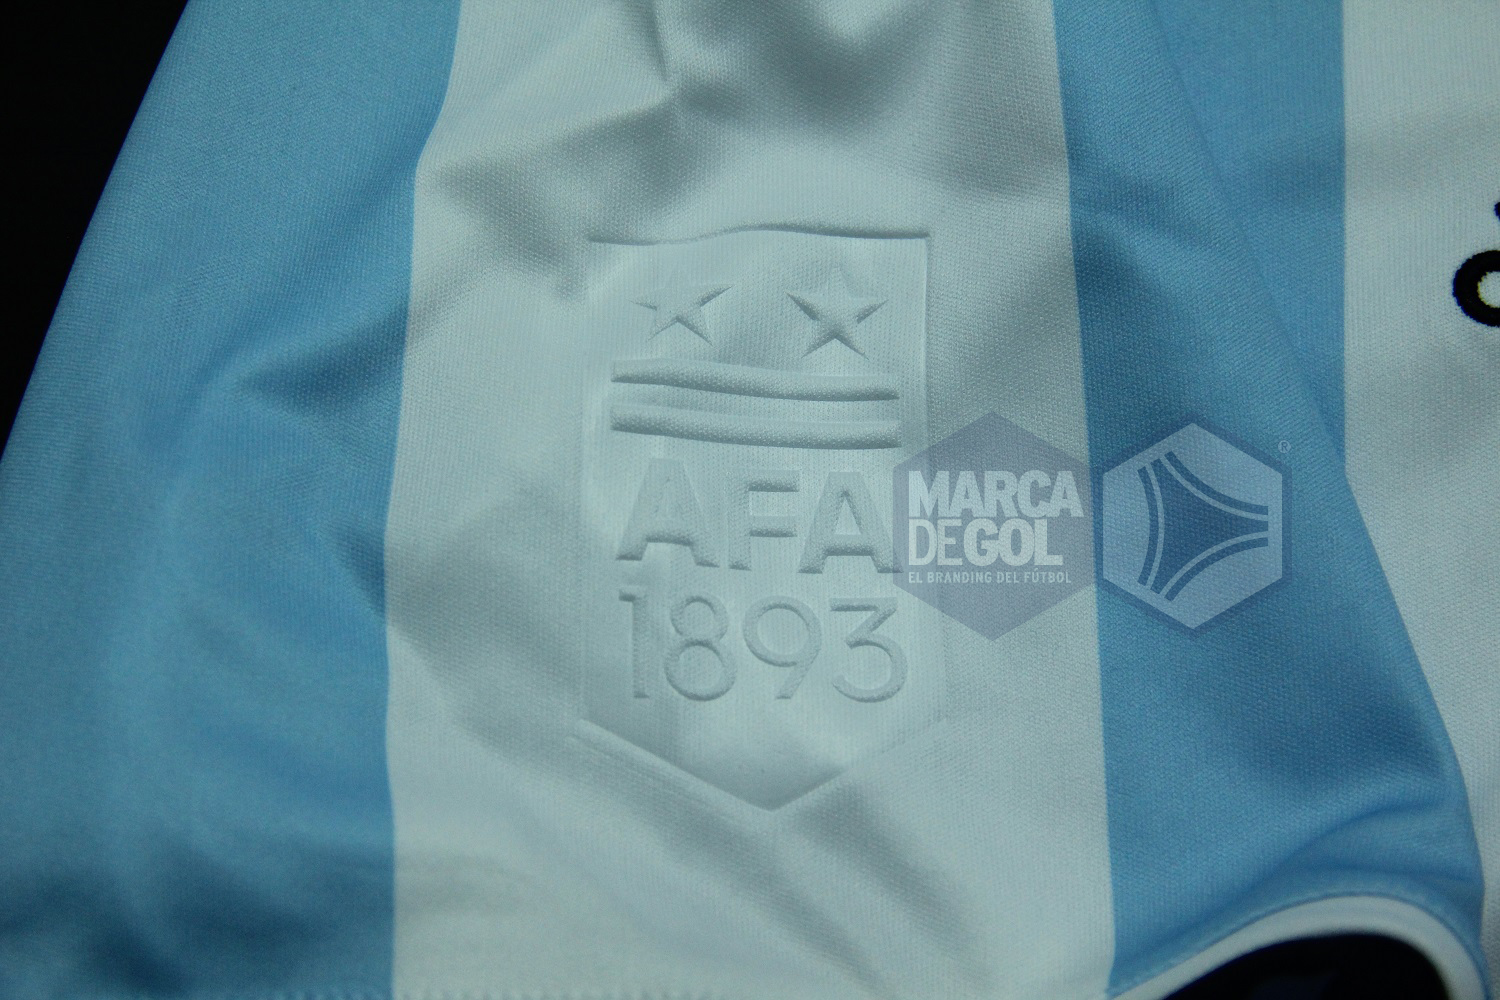 Camiseta Argentina adidas 2016 review 06